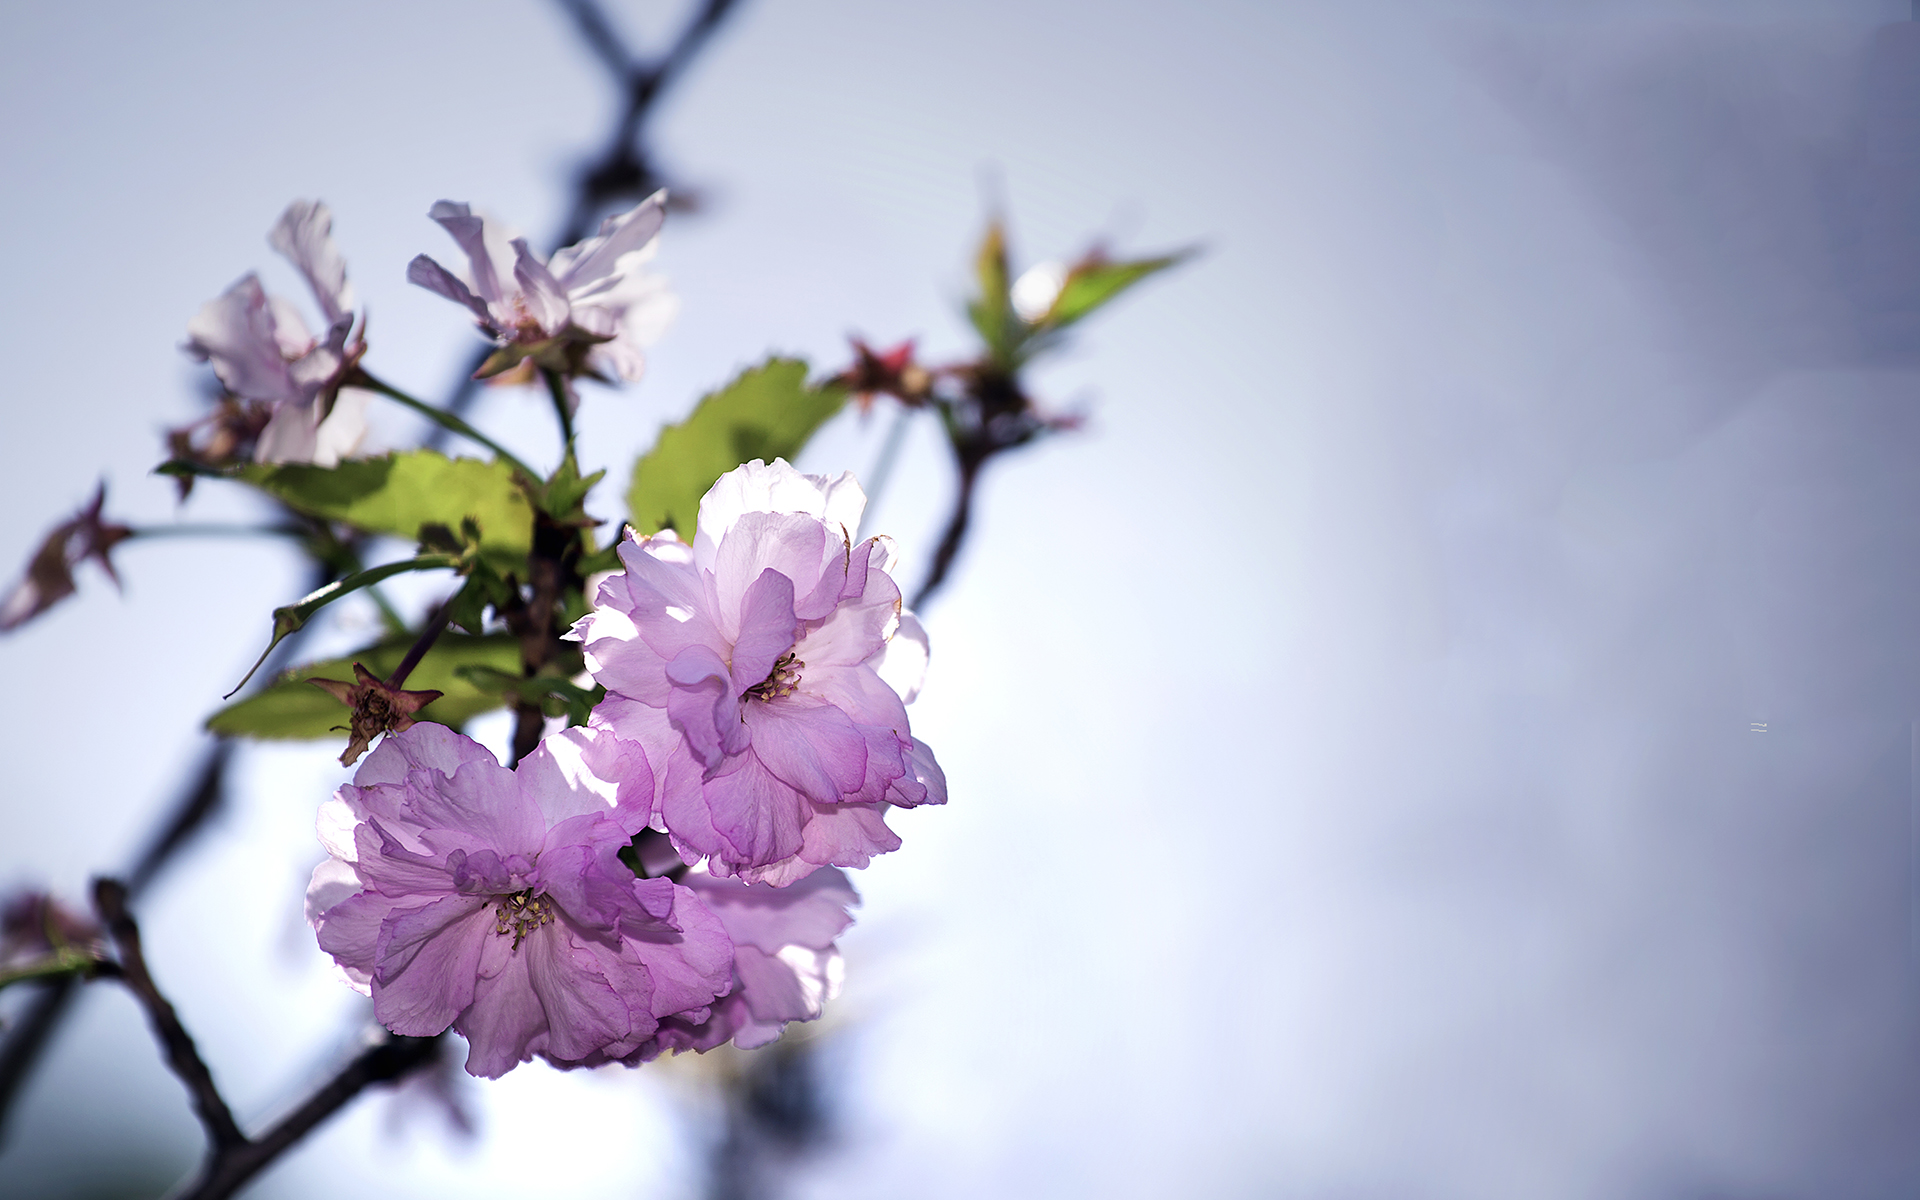 简单清新淡雅的图片 唯美花卉植物摄影高清图片(2)